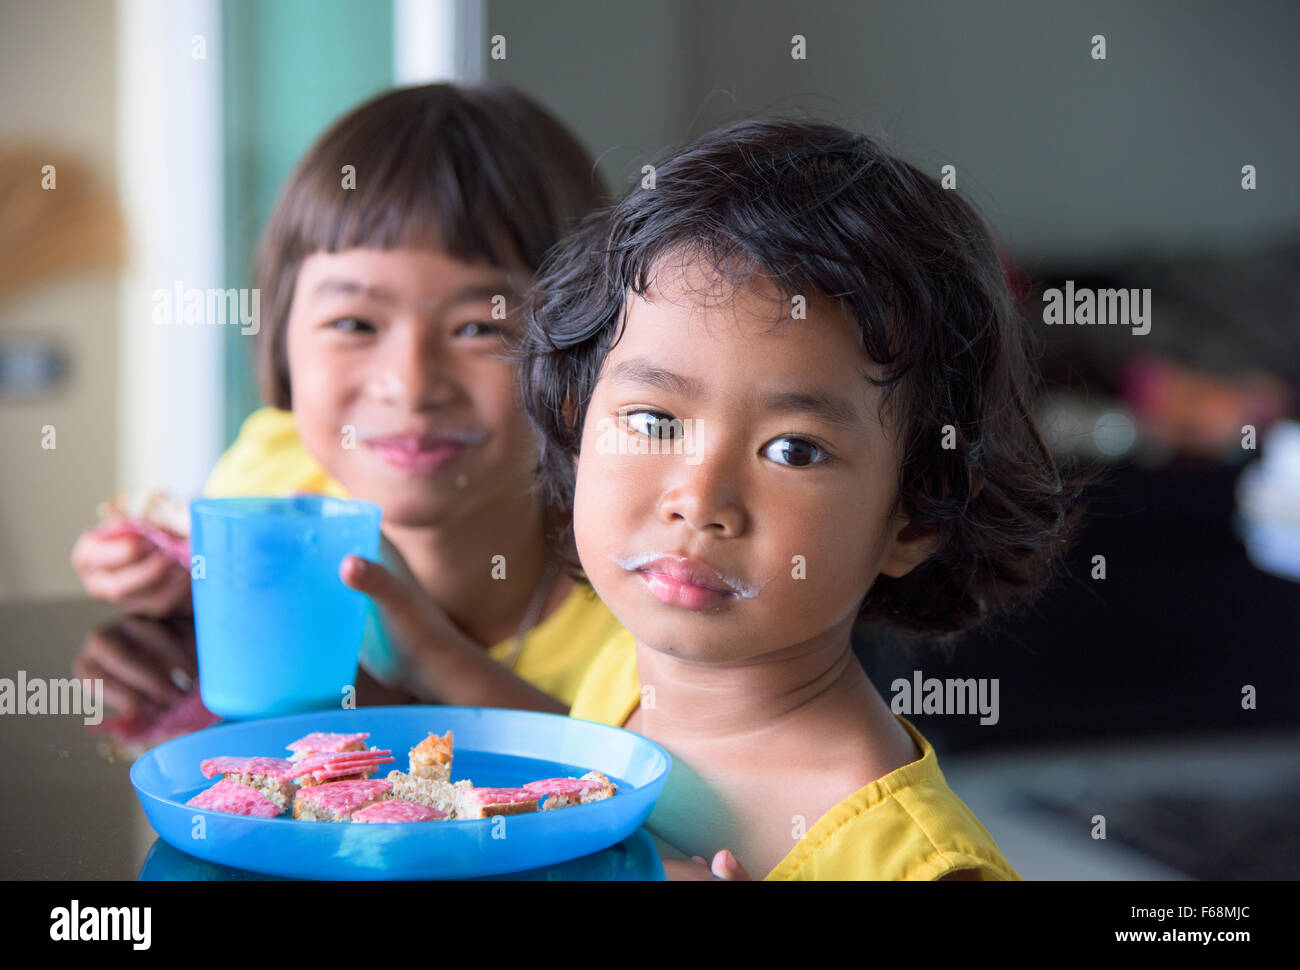 Deux filles Thai, 3 et 7 ans, la consommation de lait et de manger du pain avec du salami. Les deux grils ont une moustache de lait visible. Banque D'Images